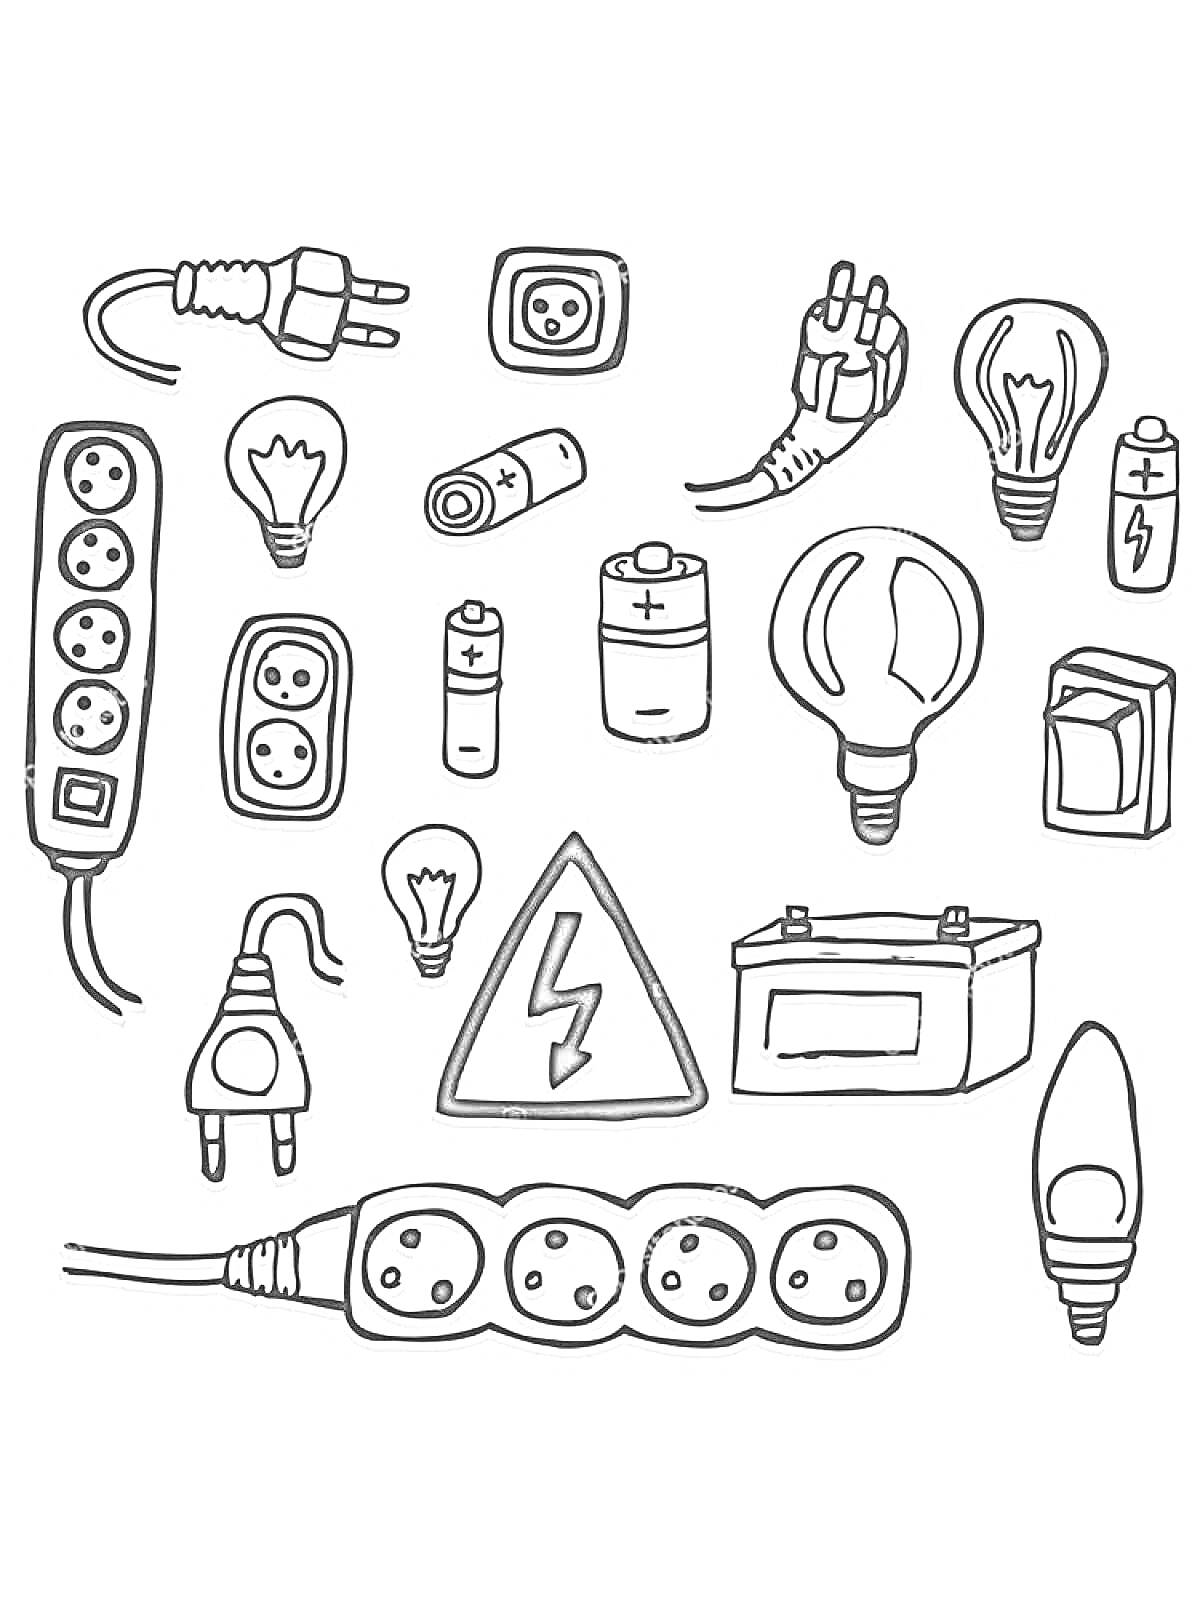 Раскраска Набор электрических элементов: удлинители, розетки, лампочки, батарейки, штепсели, электрический знак, предохранитель, электрическая лампа